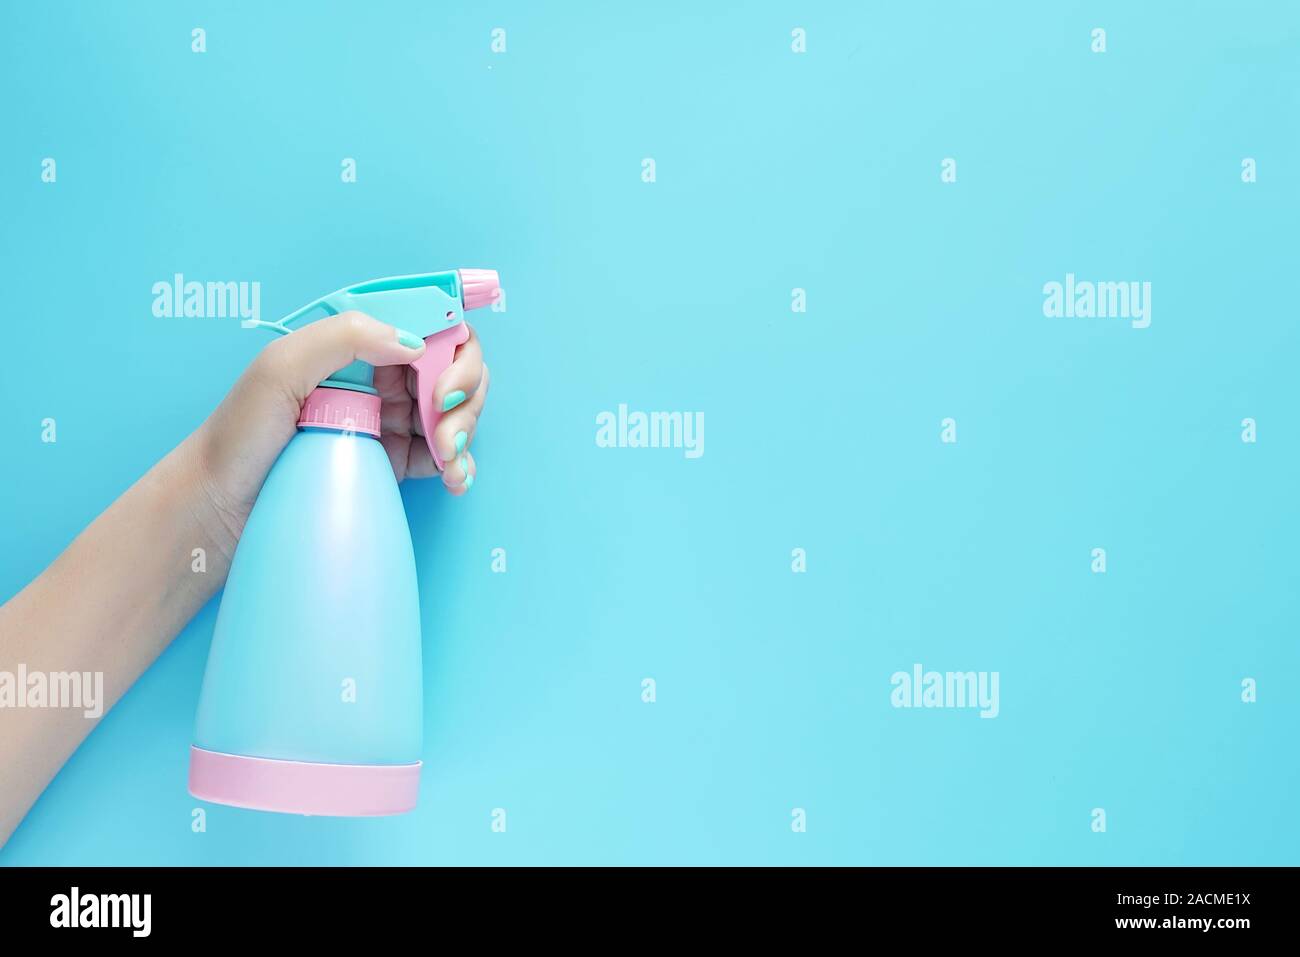 Woman hand holding spray de nettoyage détergent bleu bouteille plastique isolé sur fond bleu avec copie espace pour texte ou logo Banque D'Images